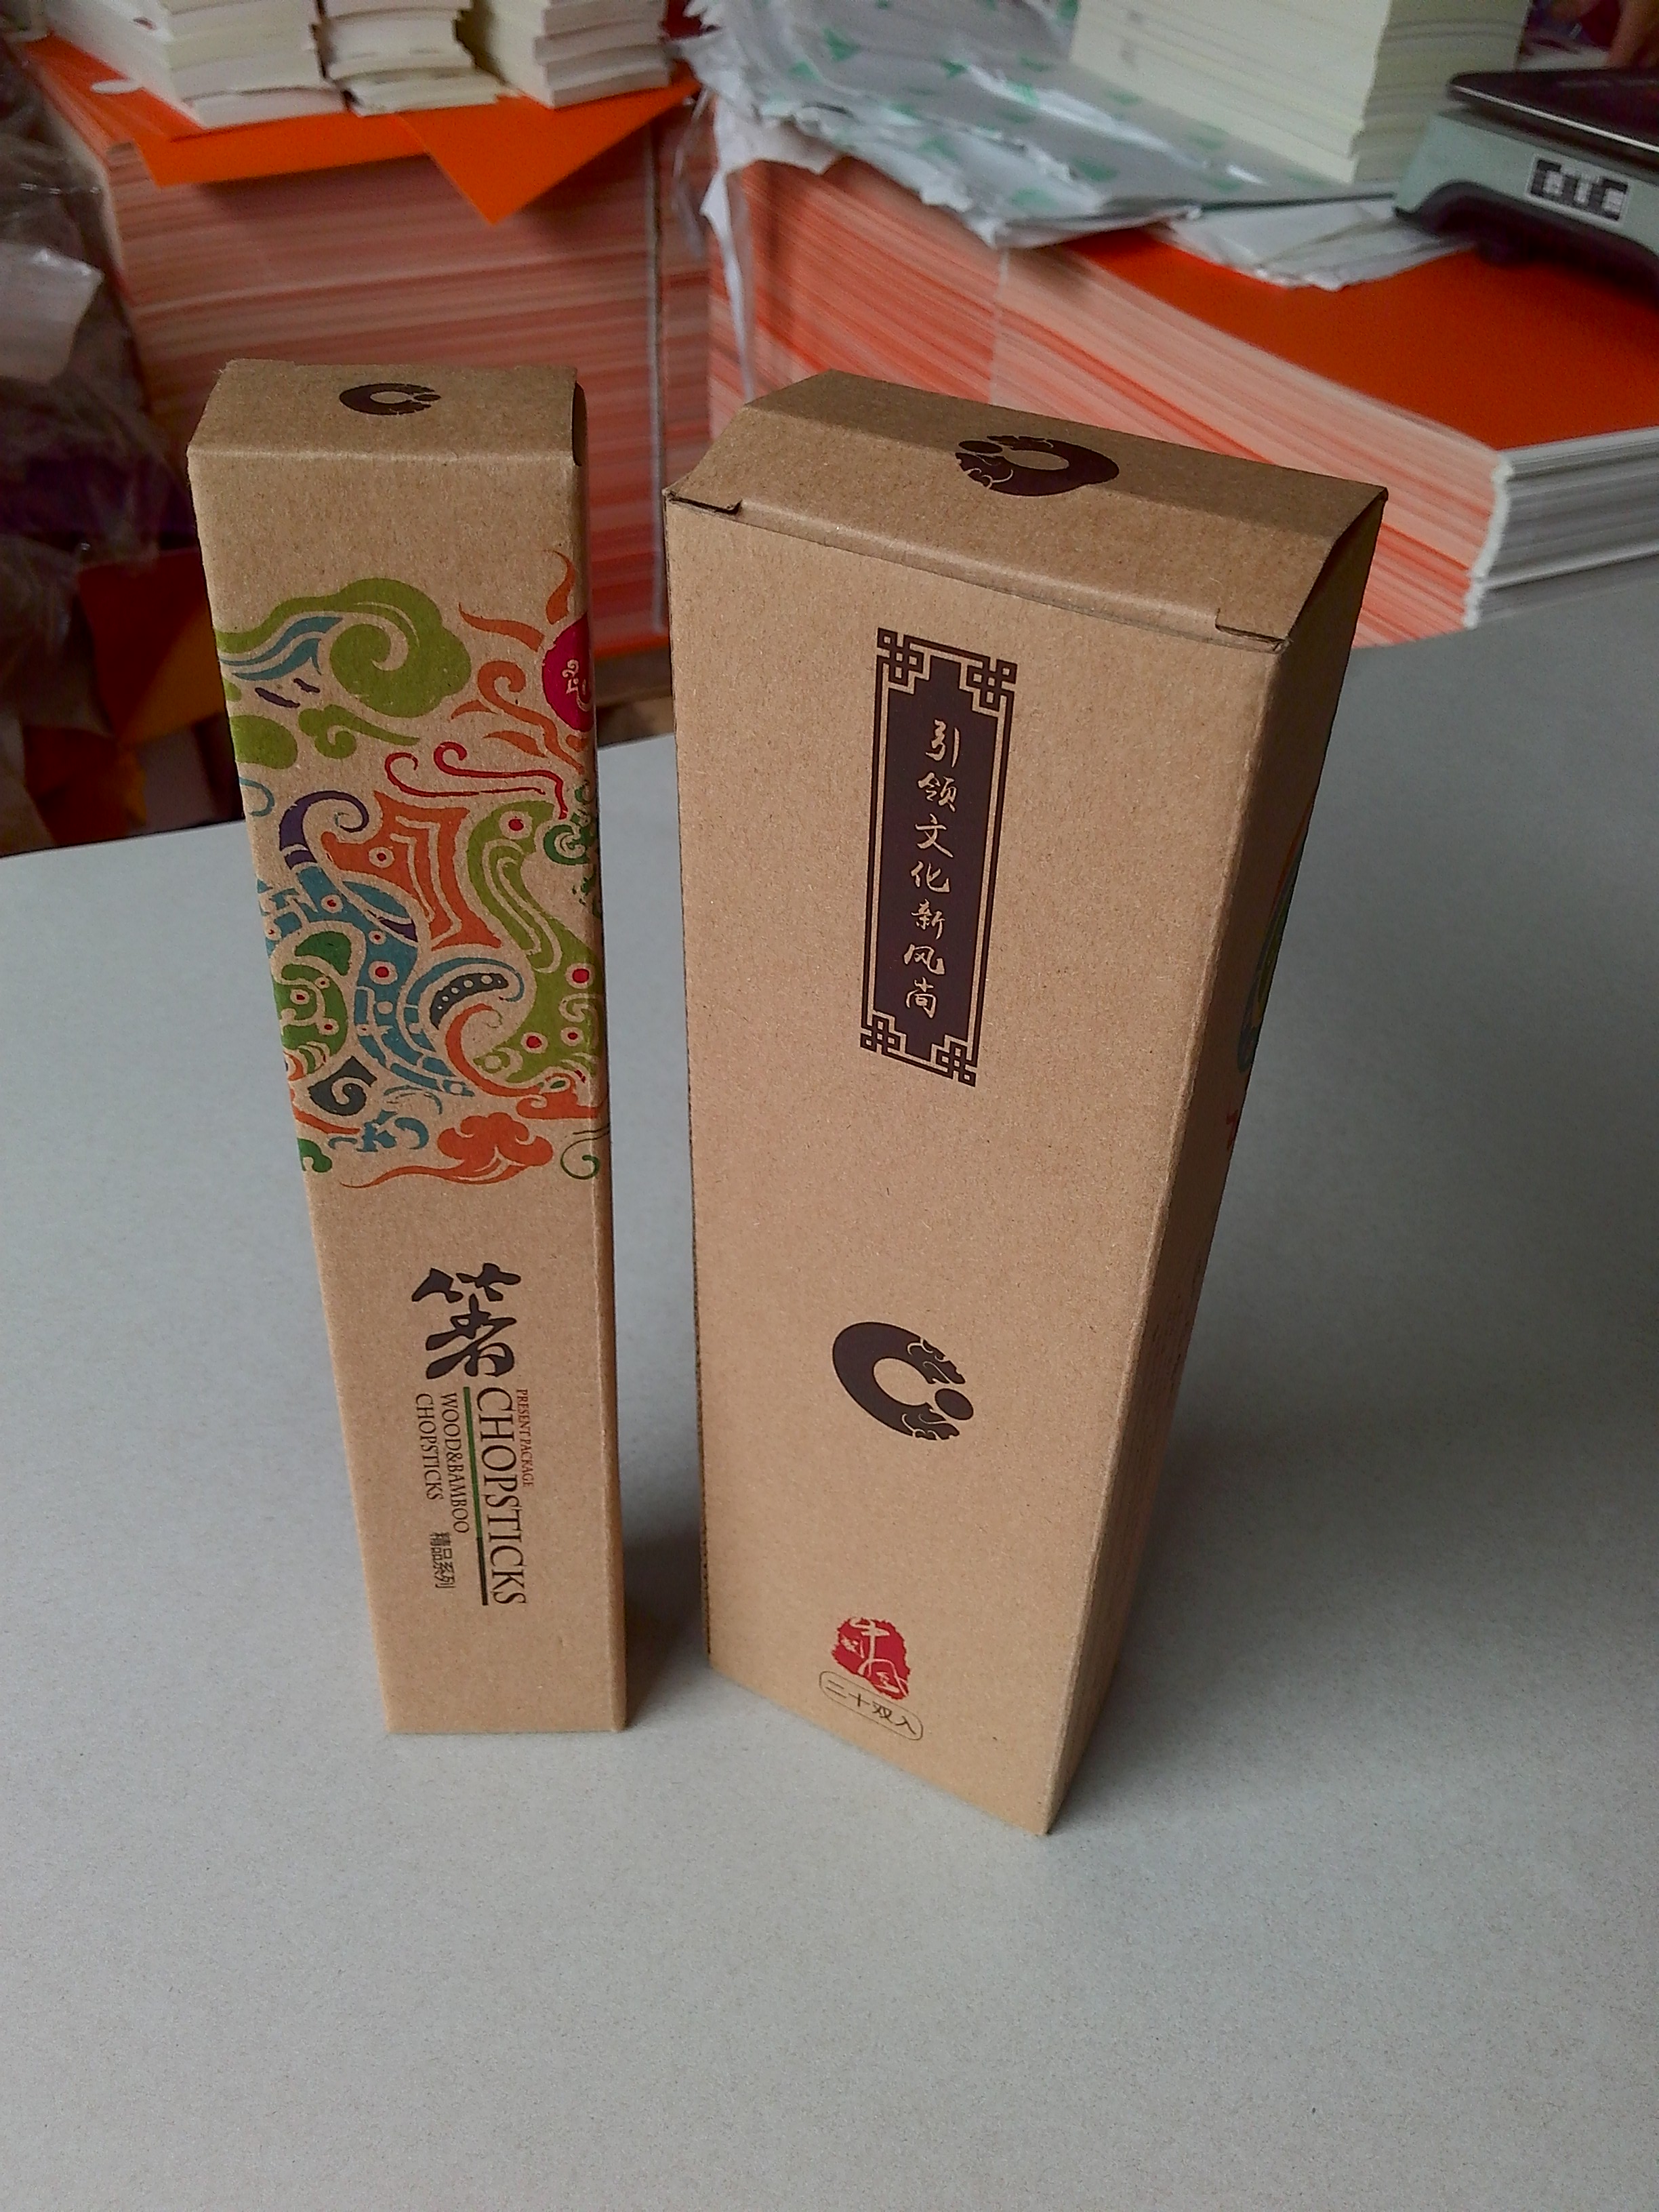 筷子包装 筷子盒 餐具盒 餐具包装 刀叉包装 筷子盒包装